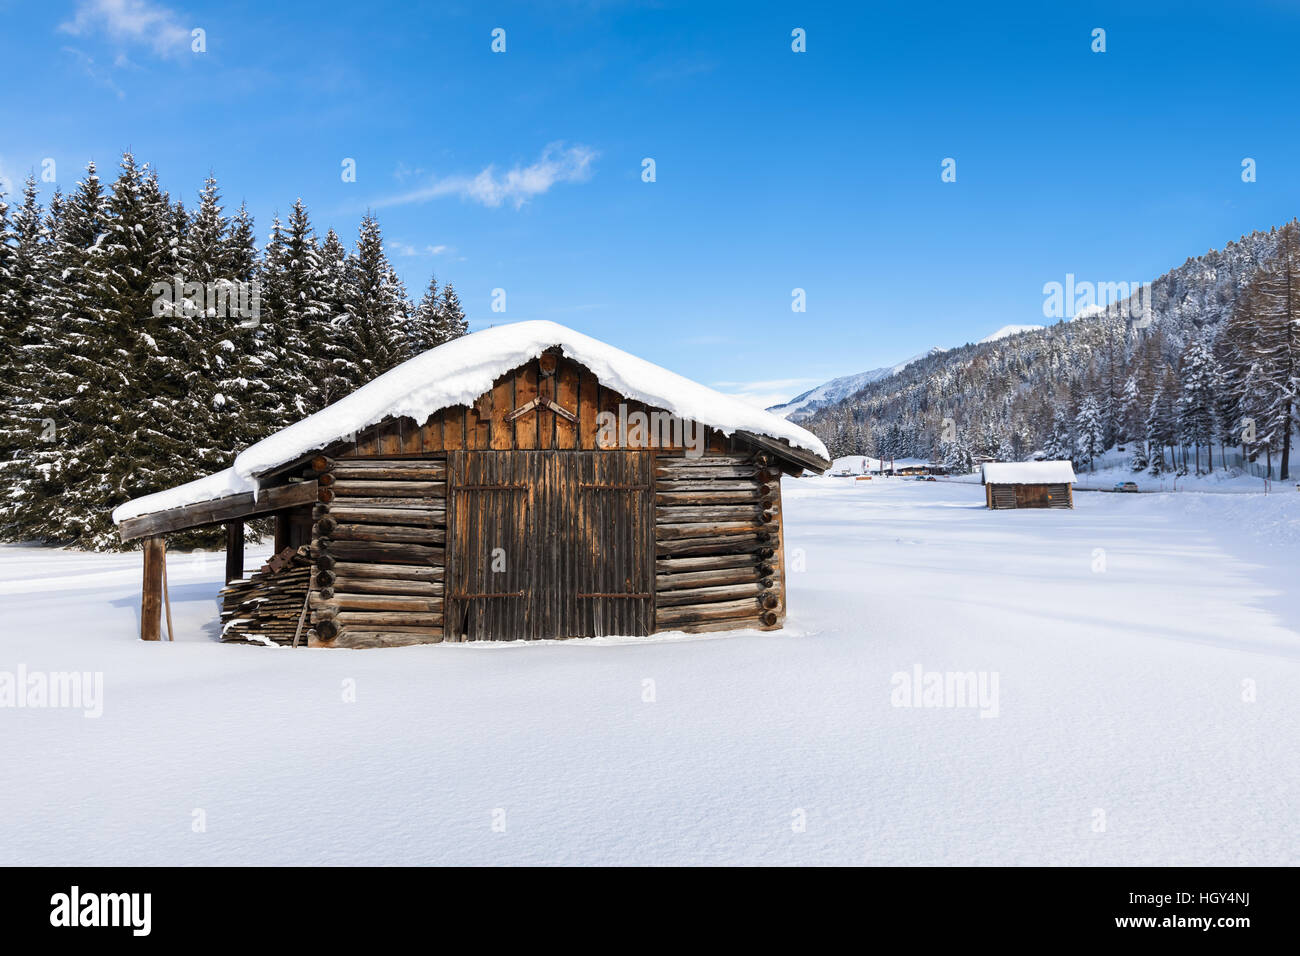 Coperta di neve chalet in legno in un bianco paesaggio invernale Foto Stock